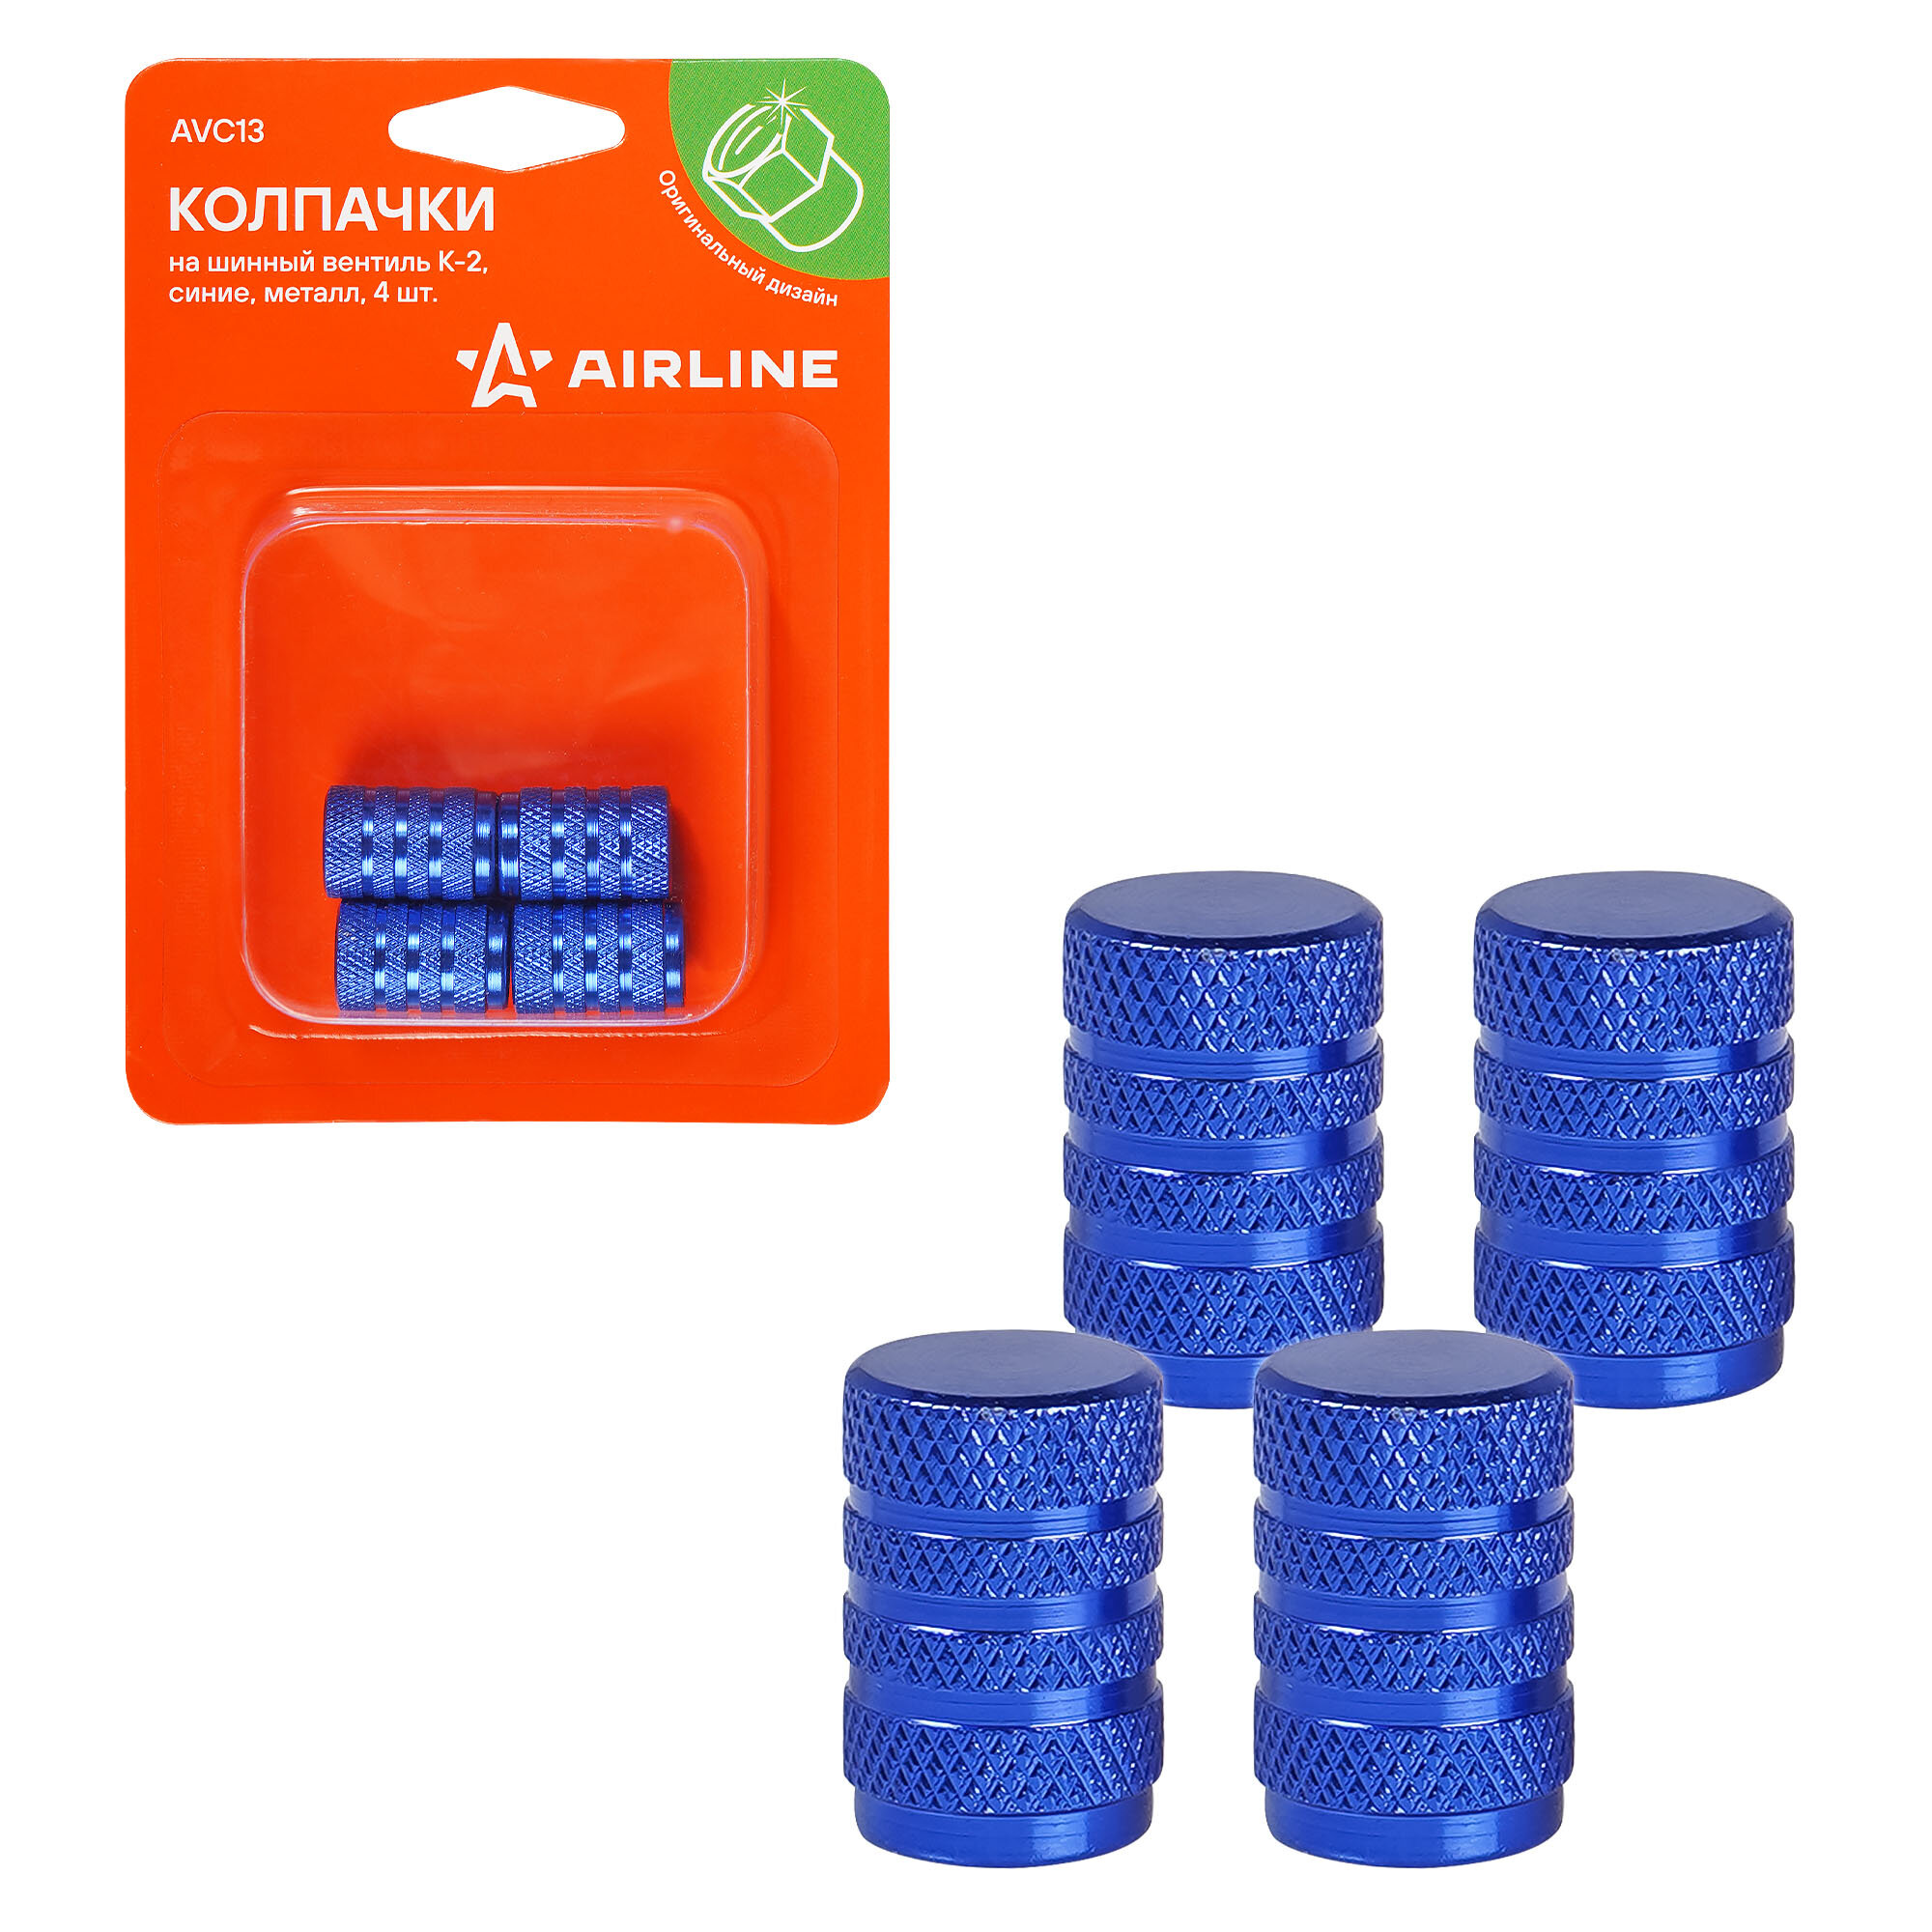 Колпачки на шинный вентиль K-2, синие, металл, 4 шт. AVC13 AIRLINE